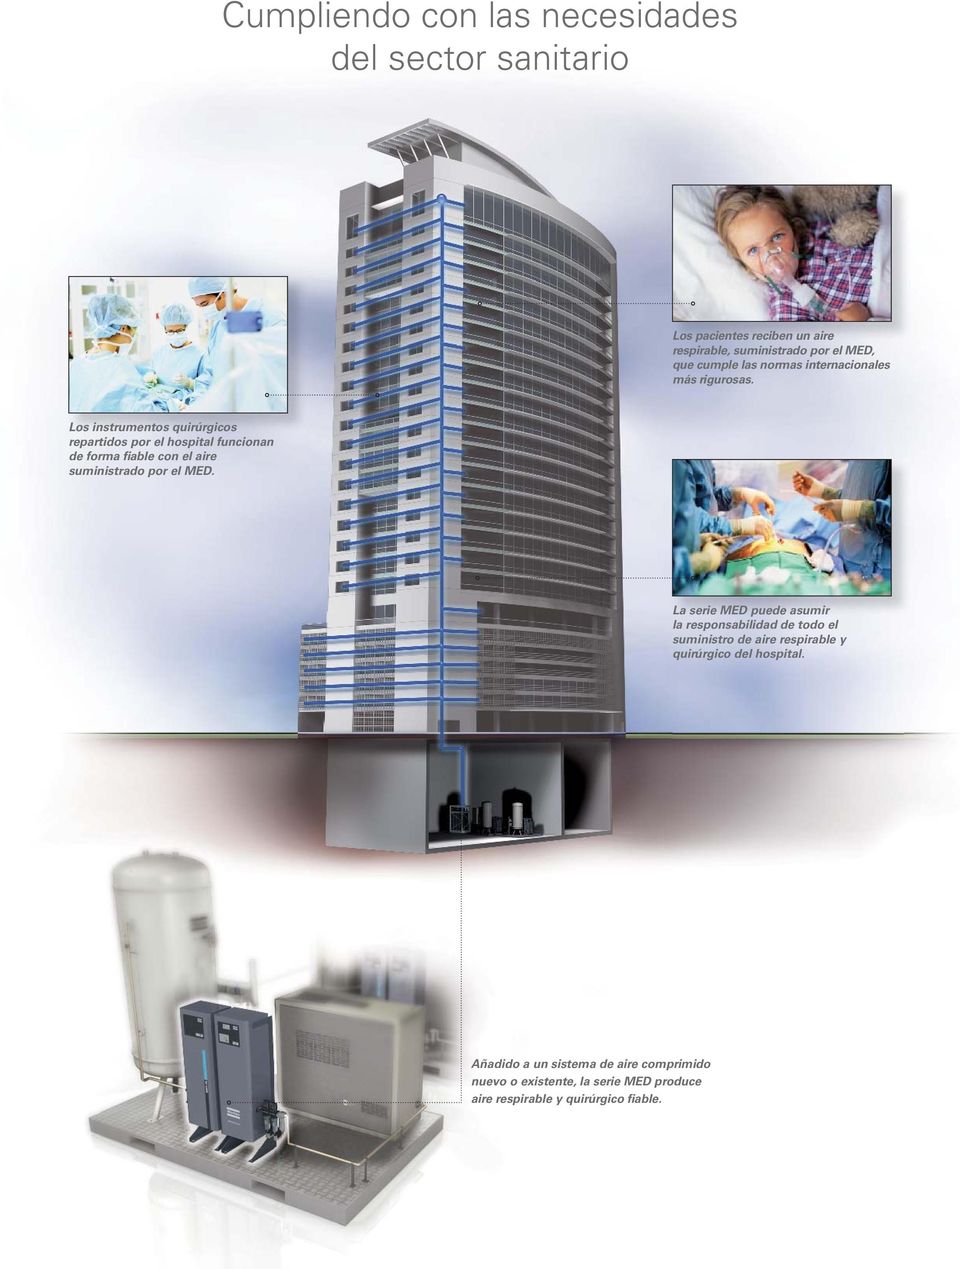 Los instrumentos quirúrgicos repartidos por el hospital funcionan de forma fiable con el aire suministrado por el MED.